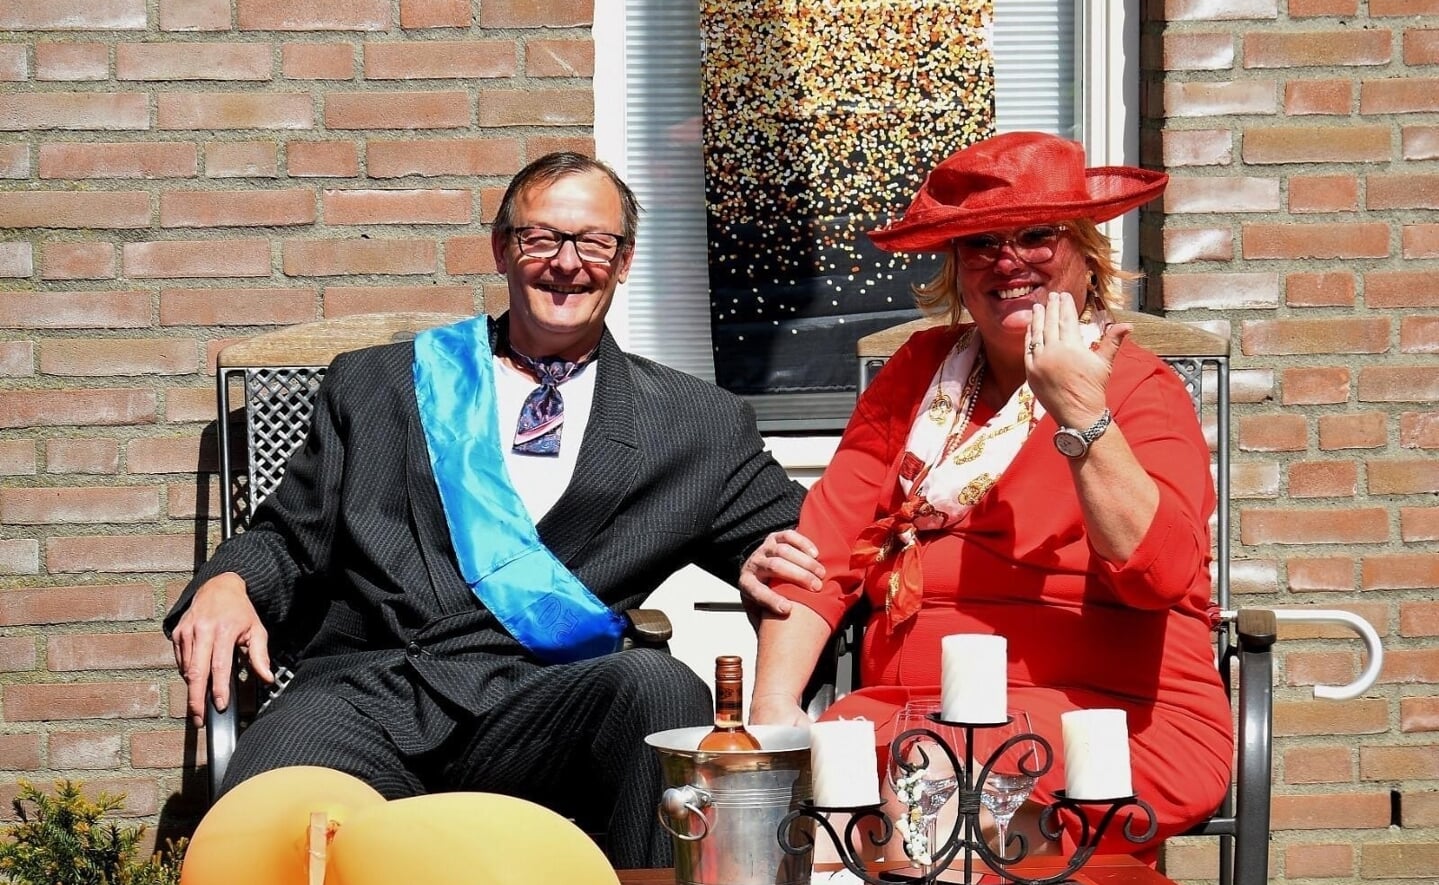 Nadja van Dinther en haar man in koninklijke kledij. Hun foto werd beloond met een prijs. (Foto: eigen collectie)